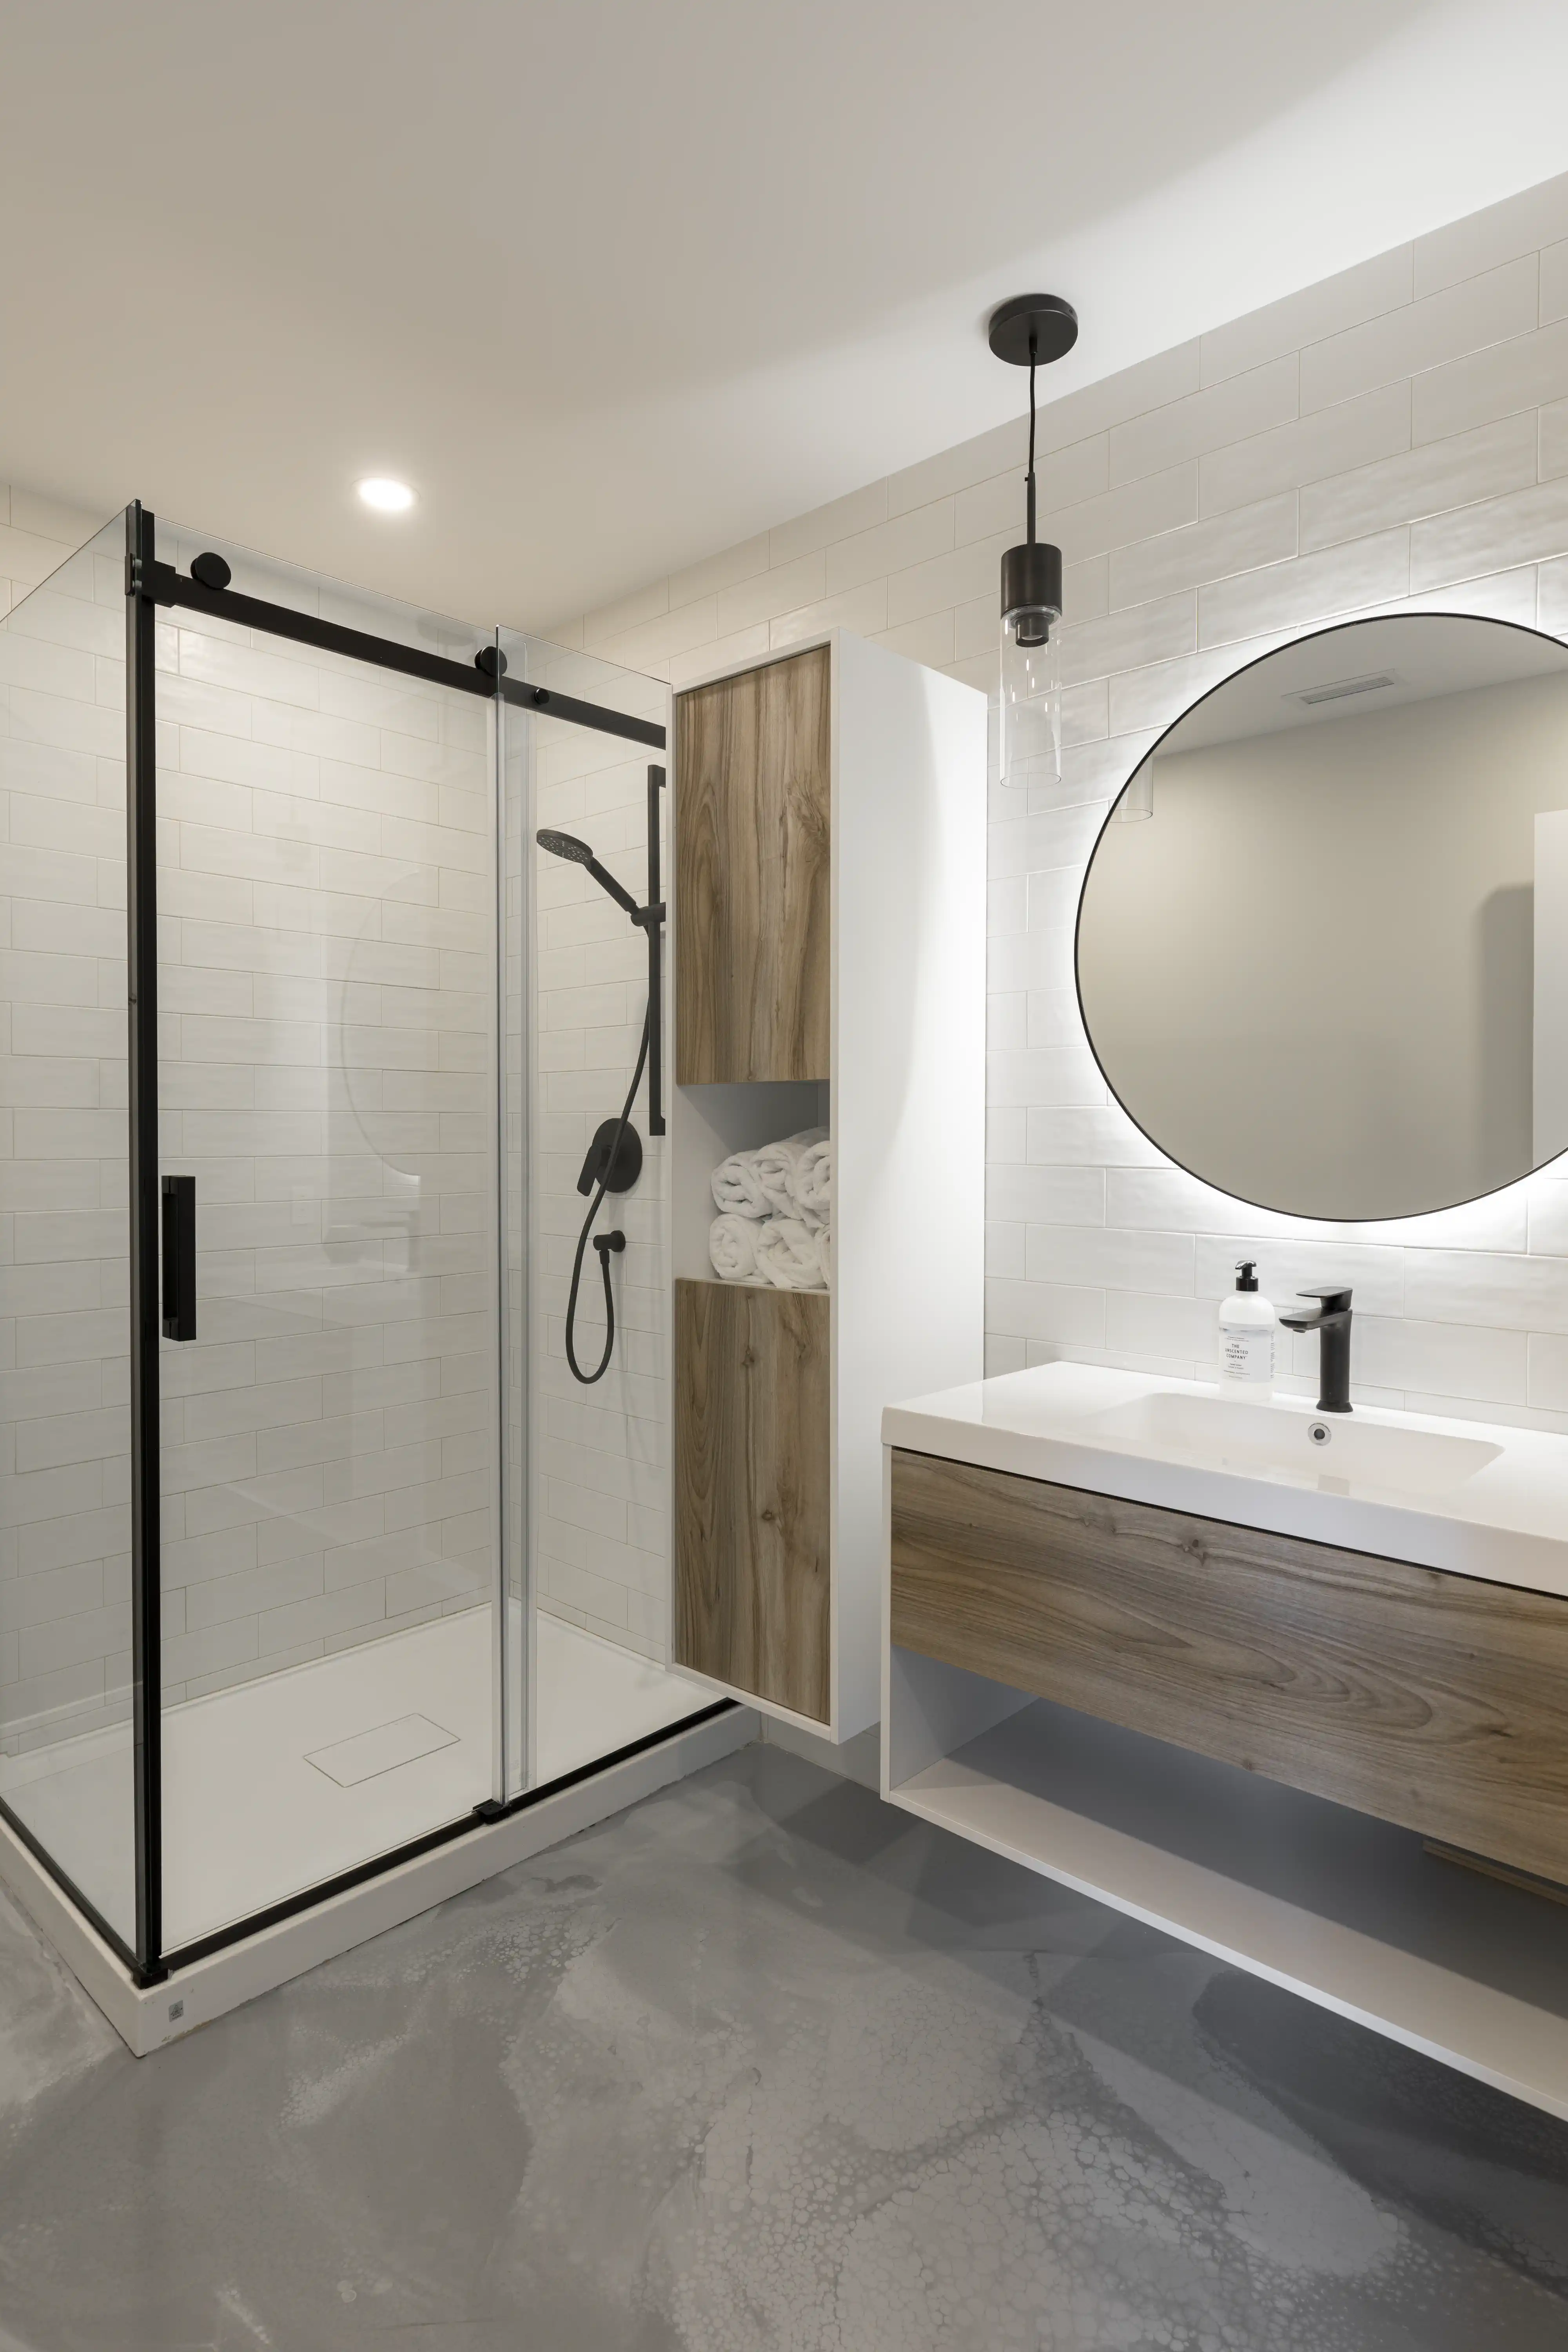 Une salle de bain moderne avec une douche et un lavabo dans des tons blancs et gris, intérieur signé Sarah Brown Design